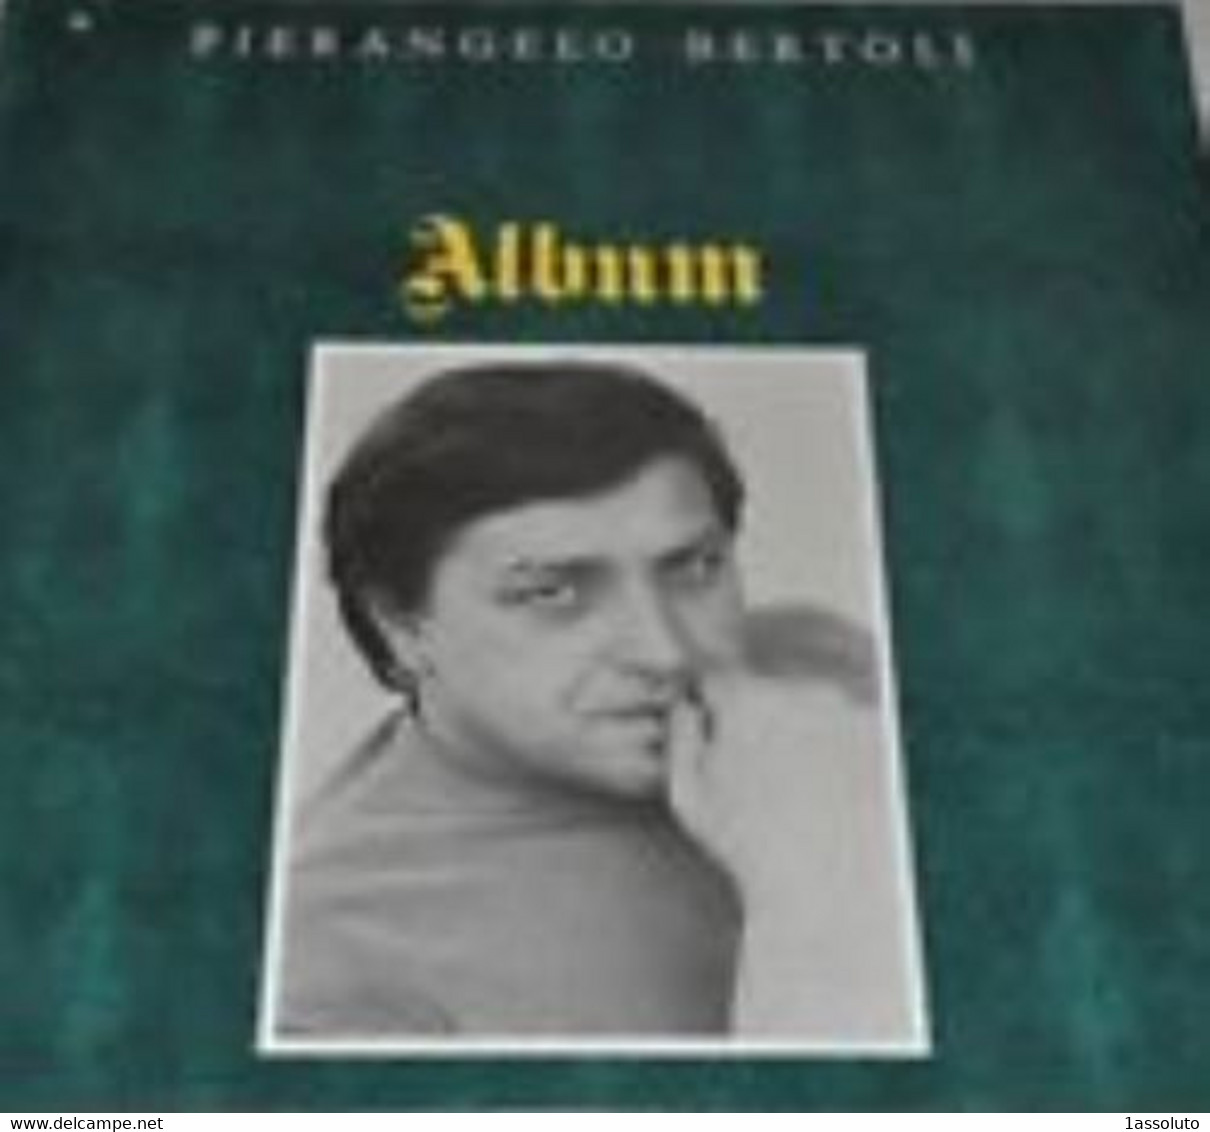 PIERANGELO BERTOLI - Album - - Autres - Musique Italienne